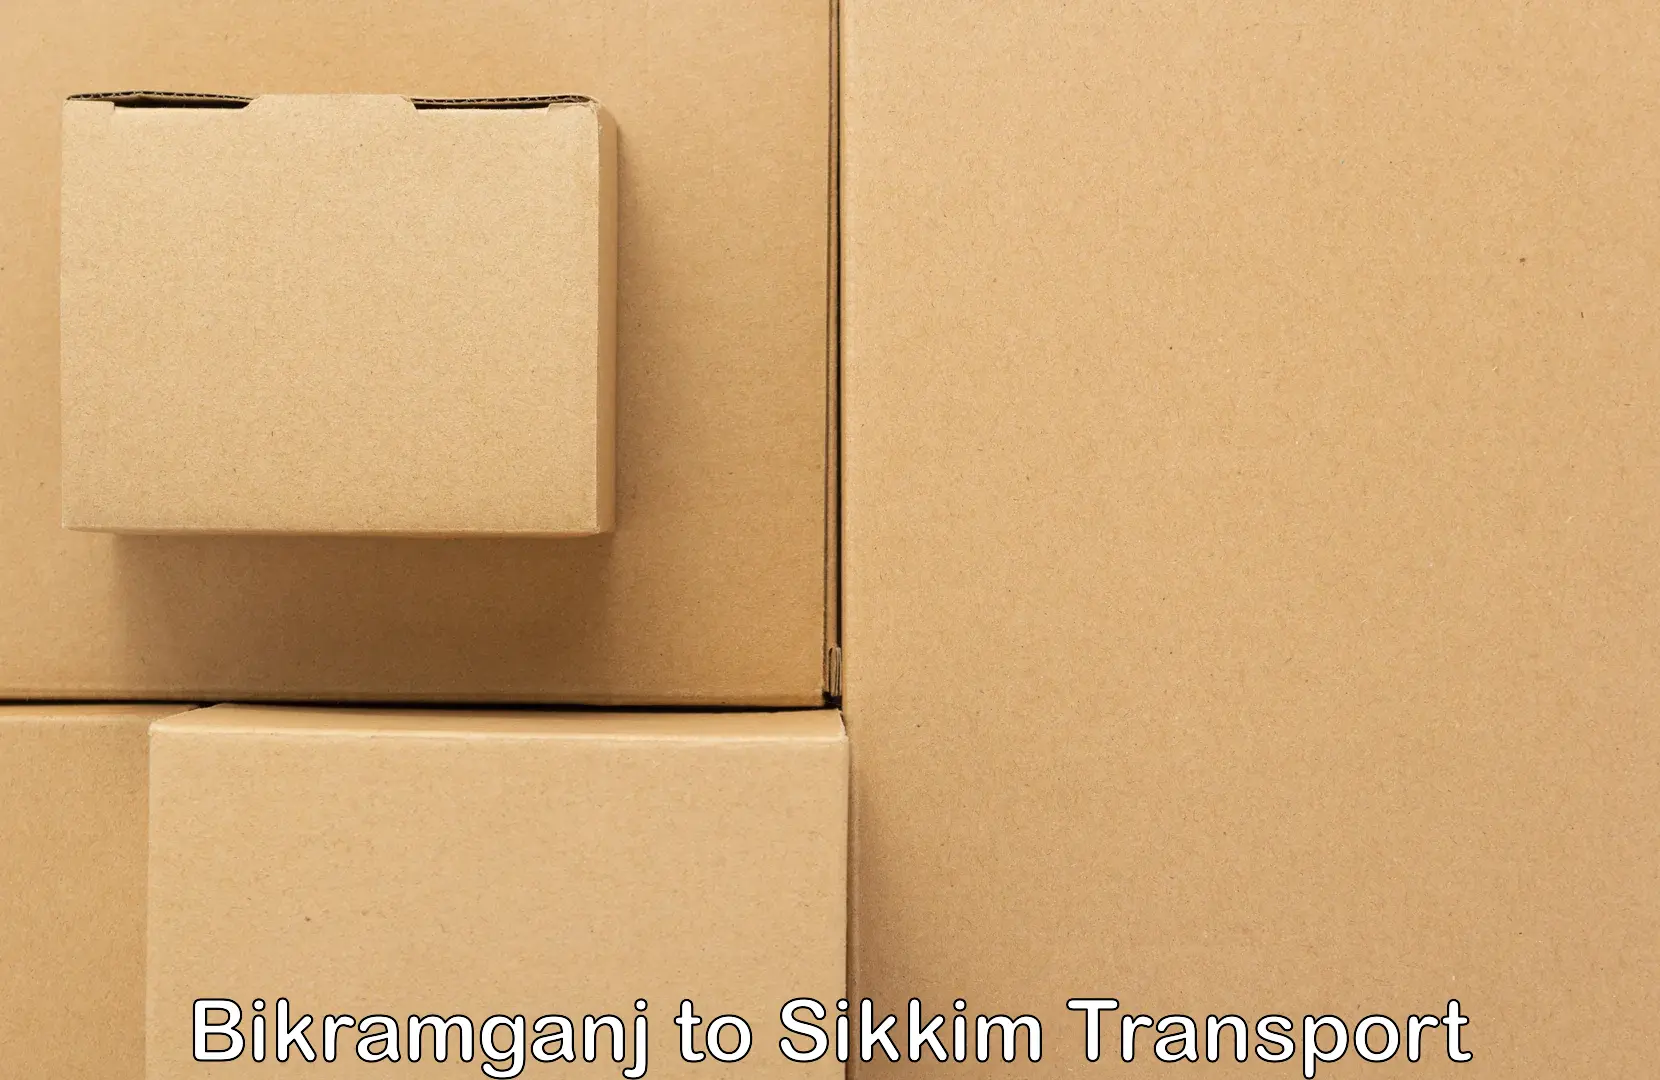 Cargo train transport services Bikramganj to Sikkim